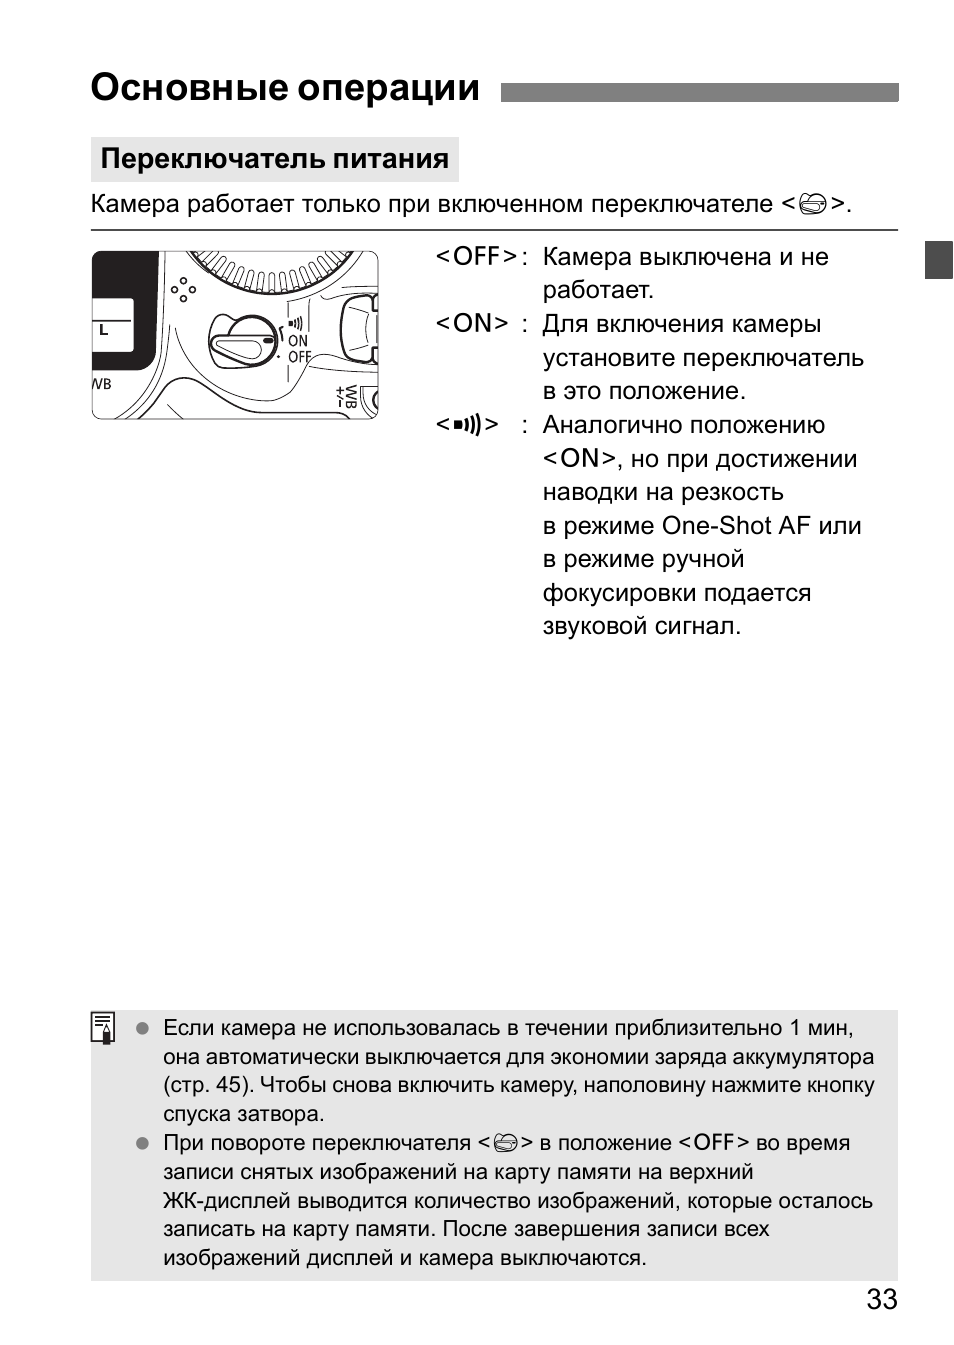 Основные операции, Переключатель питания | Инструкция по эксплуатации Canon EOS 1D Mark II N | Страница 33 / 196